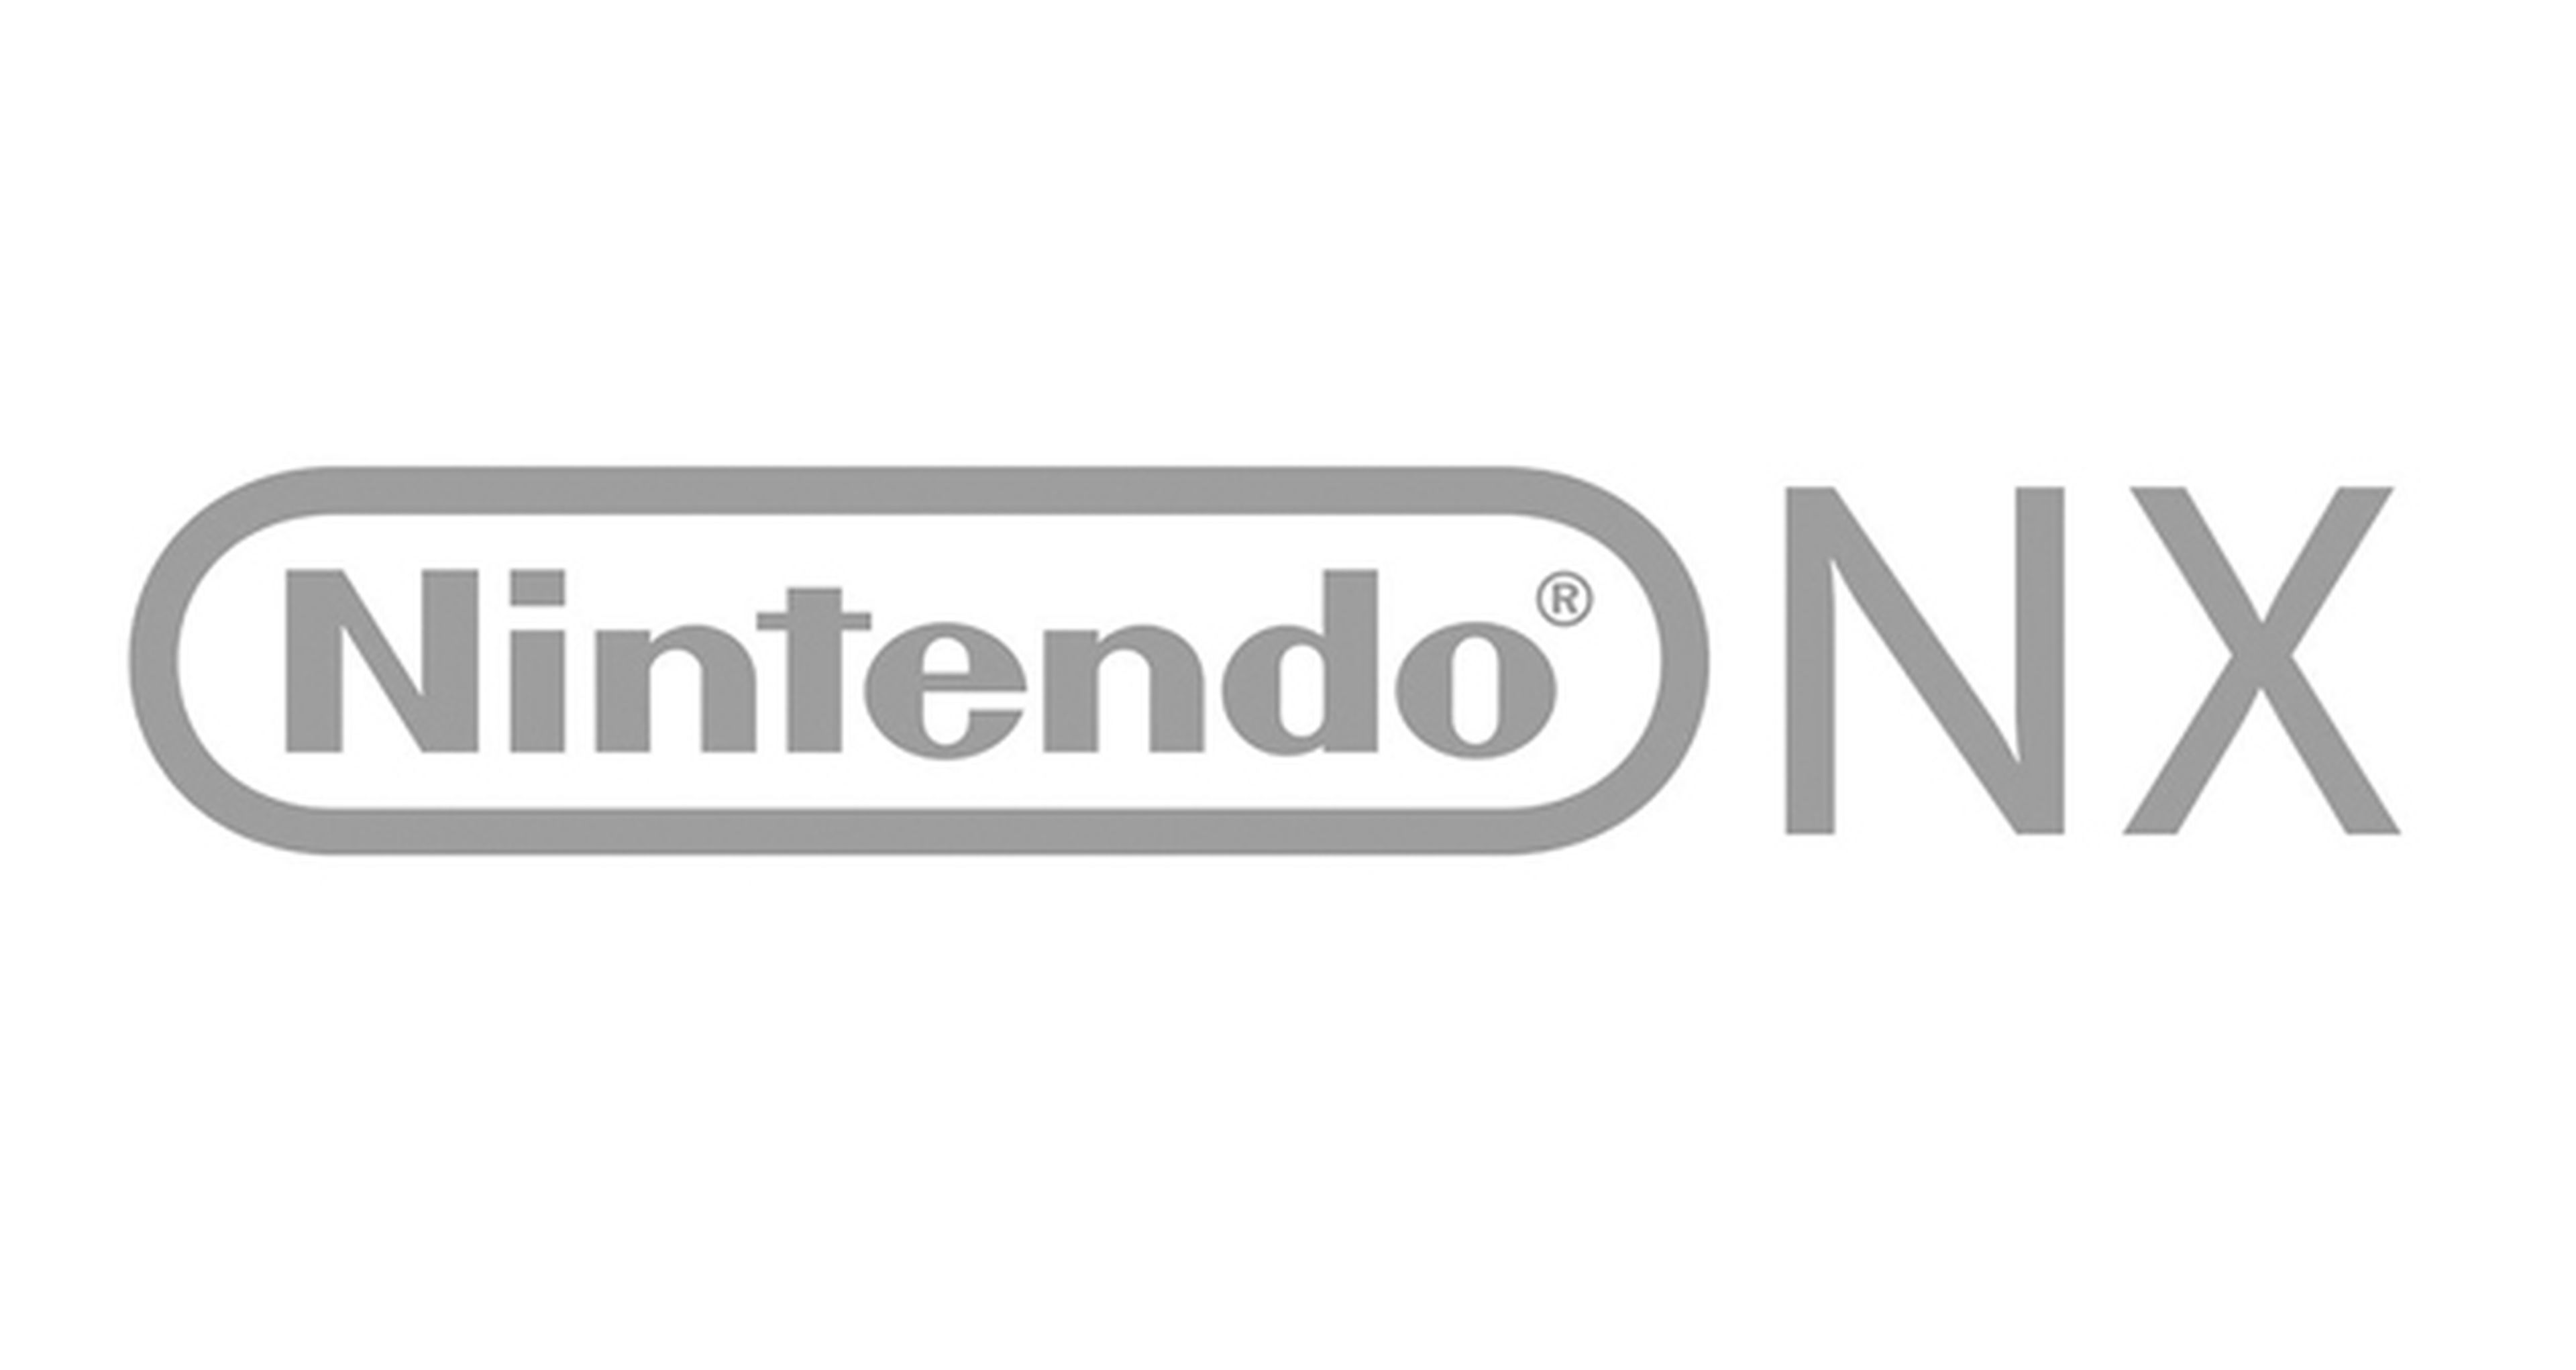 Nintendo NX lanzamiento en julio de 2016, según rumores